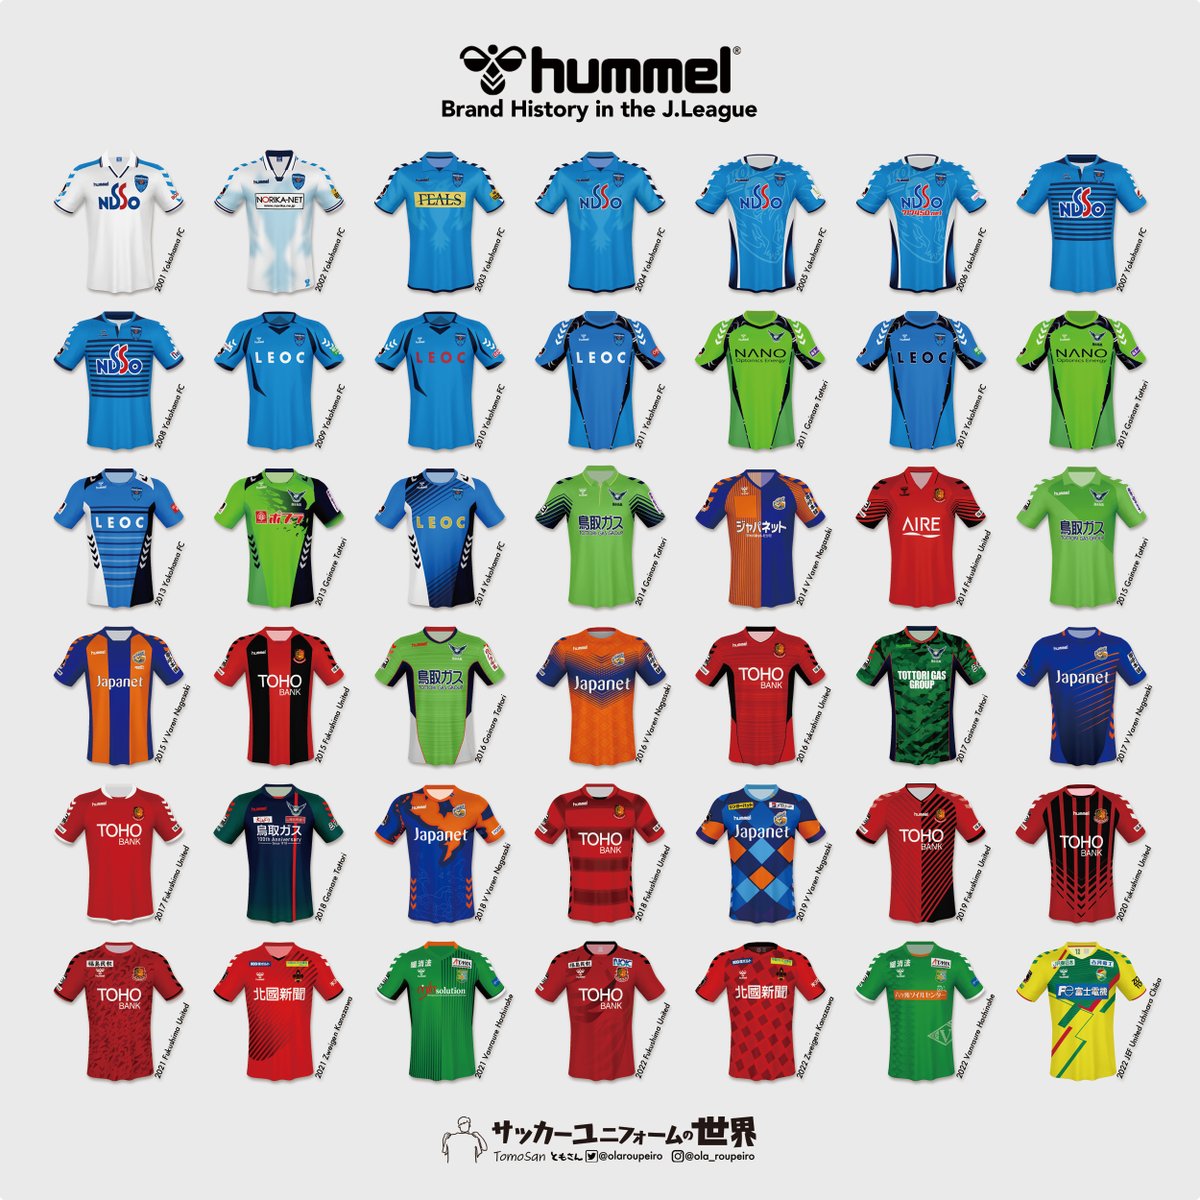 Jリーグにおけるhummelユニフォームの歴史。
デンマーク発祥の「hummel（ヒュンメル）」。
昨今の各クラブその地域に根ざした独特のデザインはJリーグファン、ユニフォームファンの注目となっています。
これからも私達を楽しませてください🐝

#hummel #brandhistory #Jleague #Jユニ図鑑